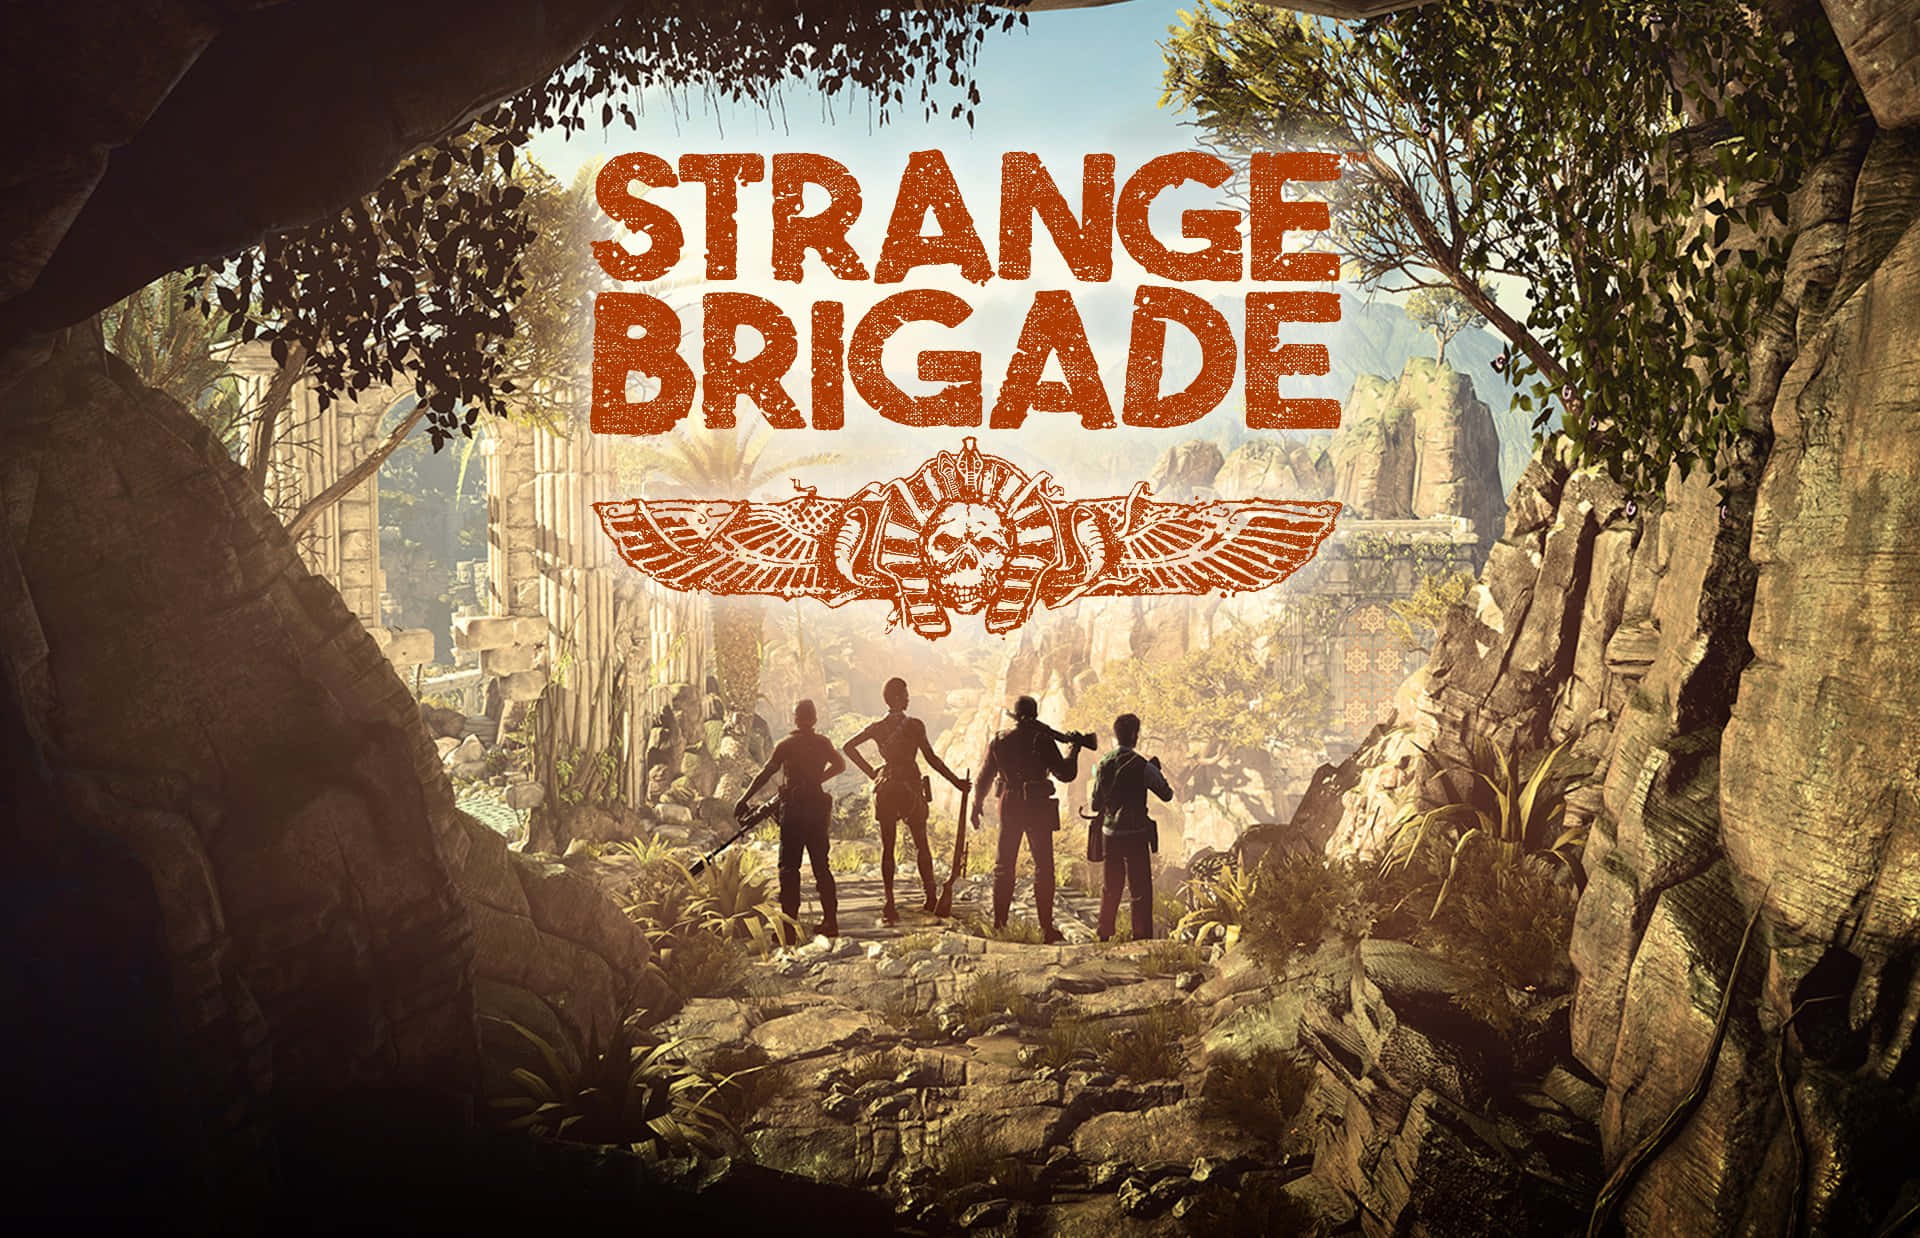 Blimedlem I Strange Brigade Och Utforska Exotiska Platser